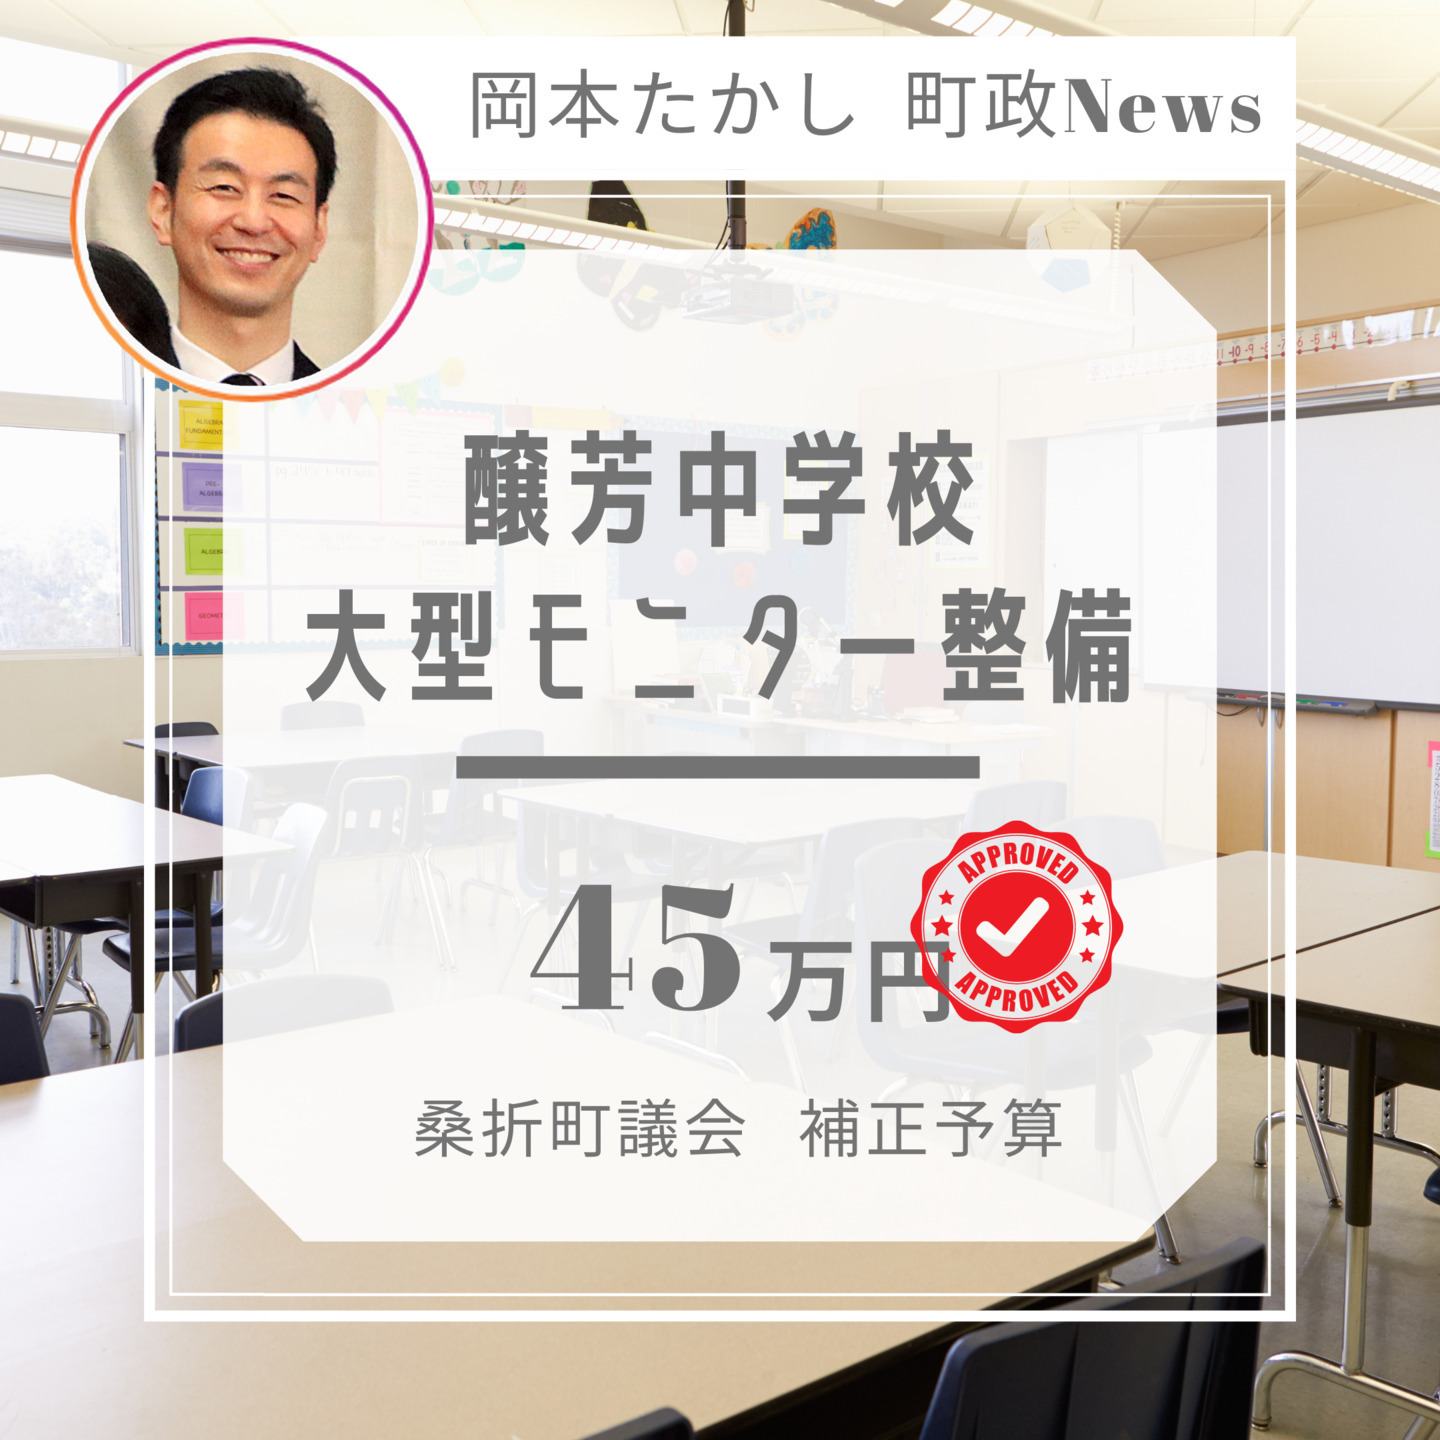 【桑折町のGIGAスクール化は迅速です】醸芳中学校、特別教室の大型モニターを購入します。国が進めるGIGAスクール構想の一つです。